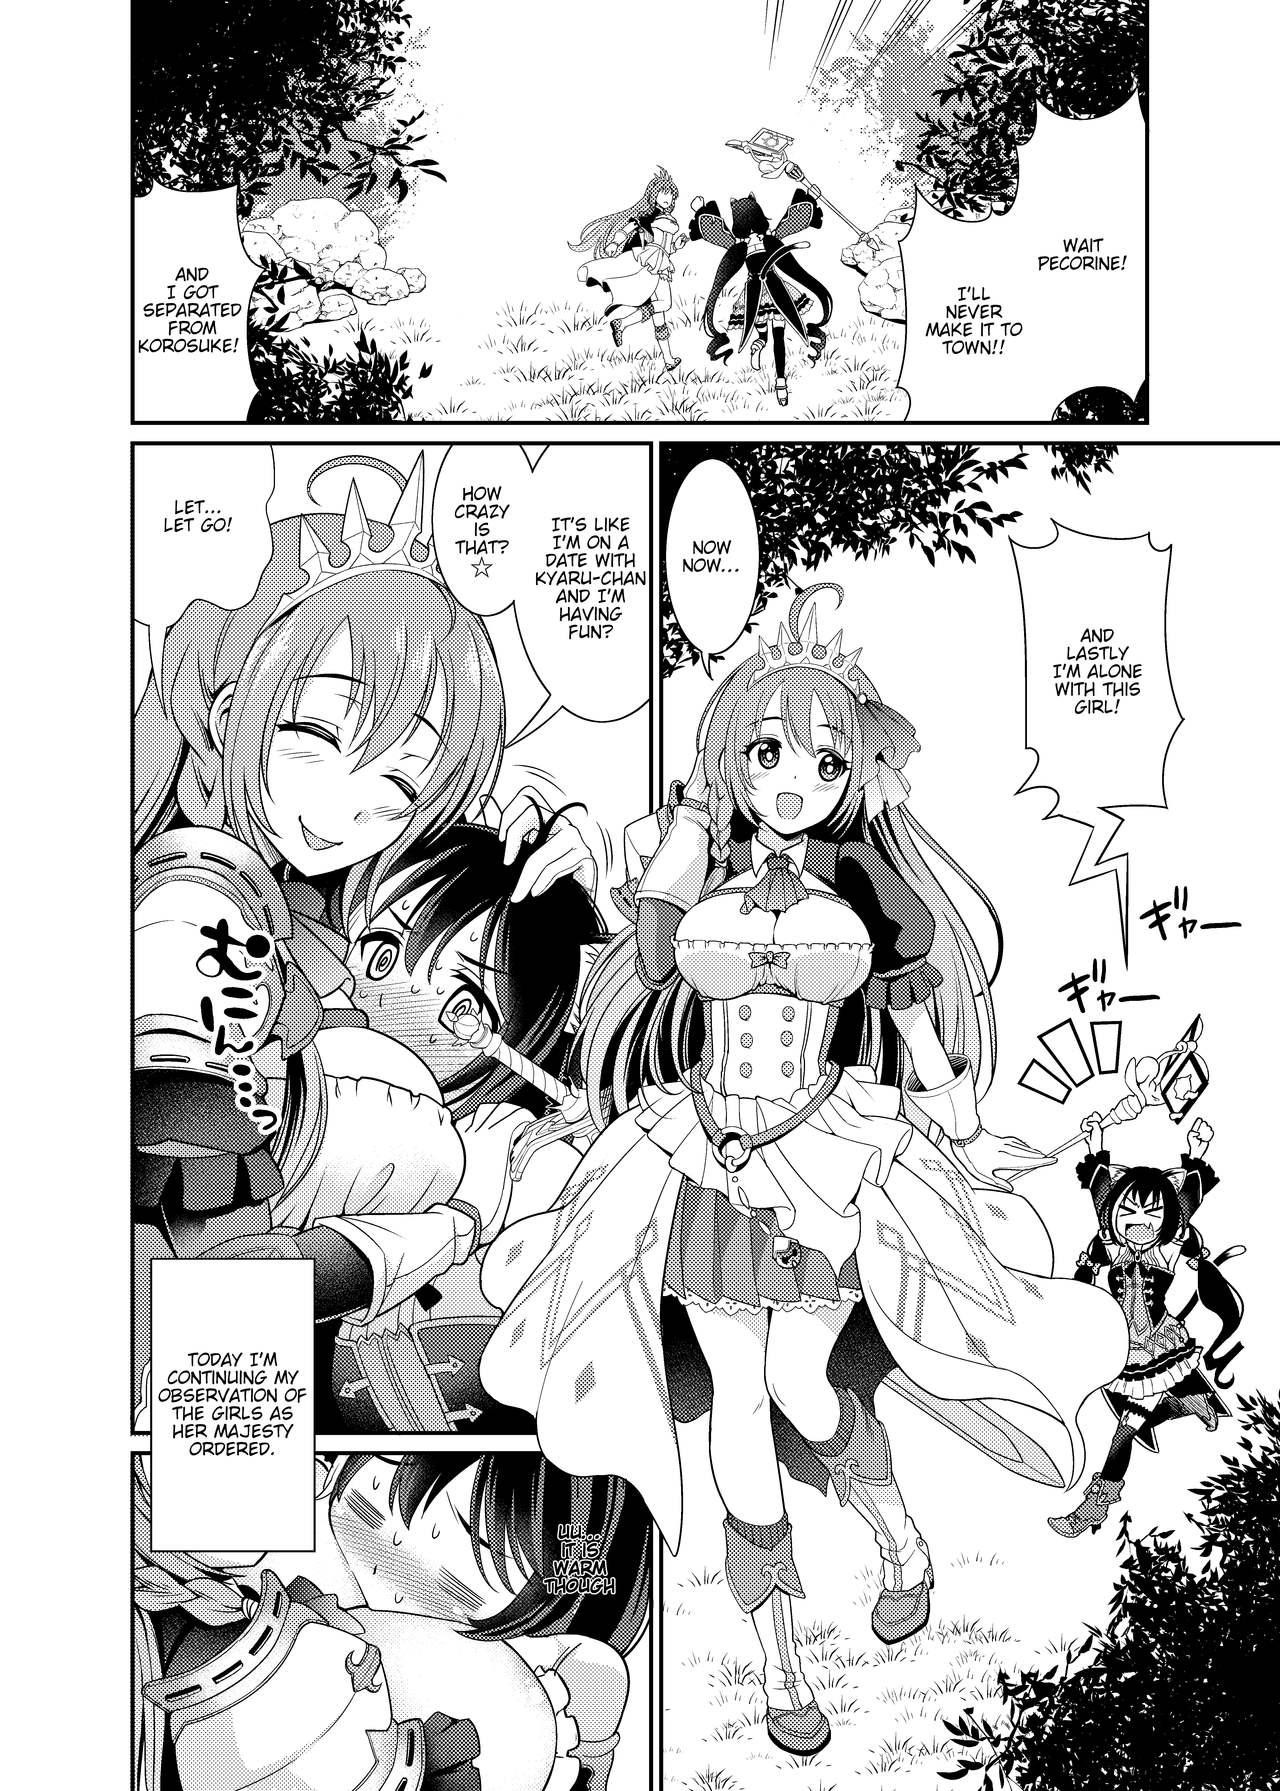 Breasts Mamono nante Taberu kara... Ochinchin ga Haechau no yo!! - Princess connect Love - Page 4